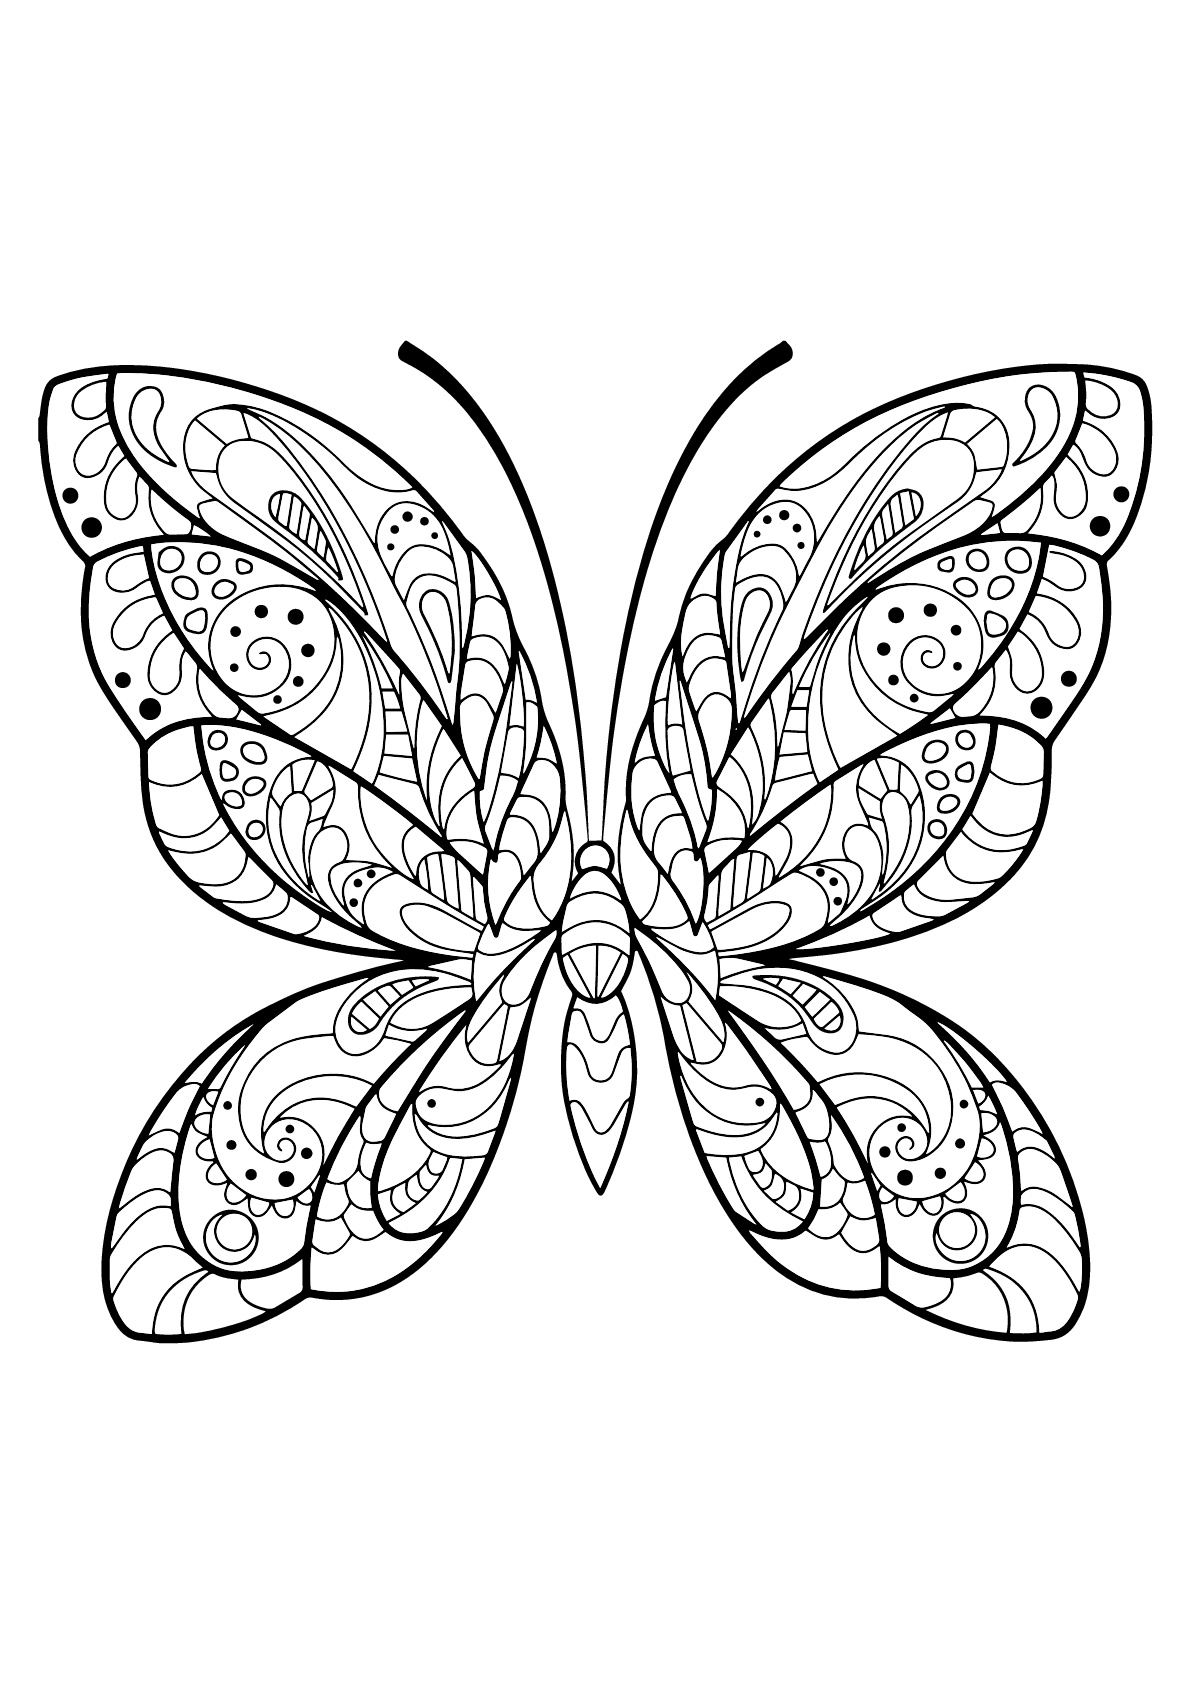 Mariposa con bellos e intrincados dibujos - 2